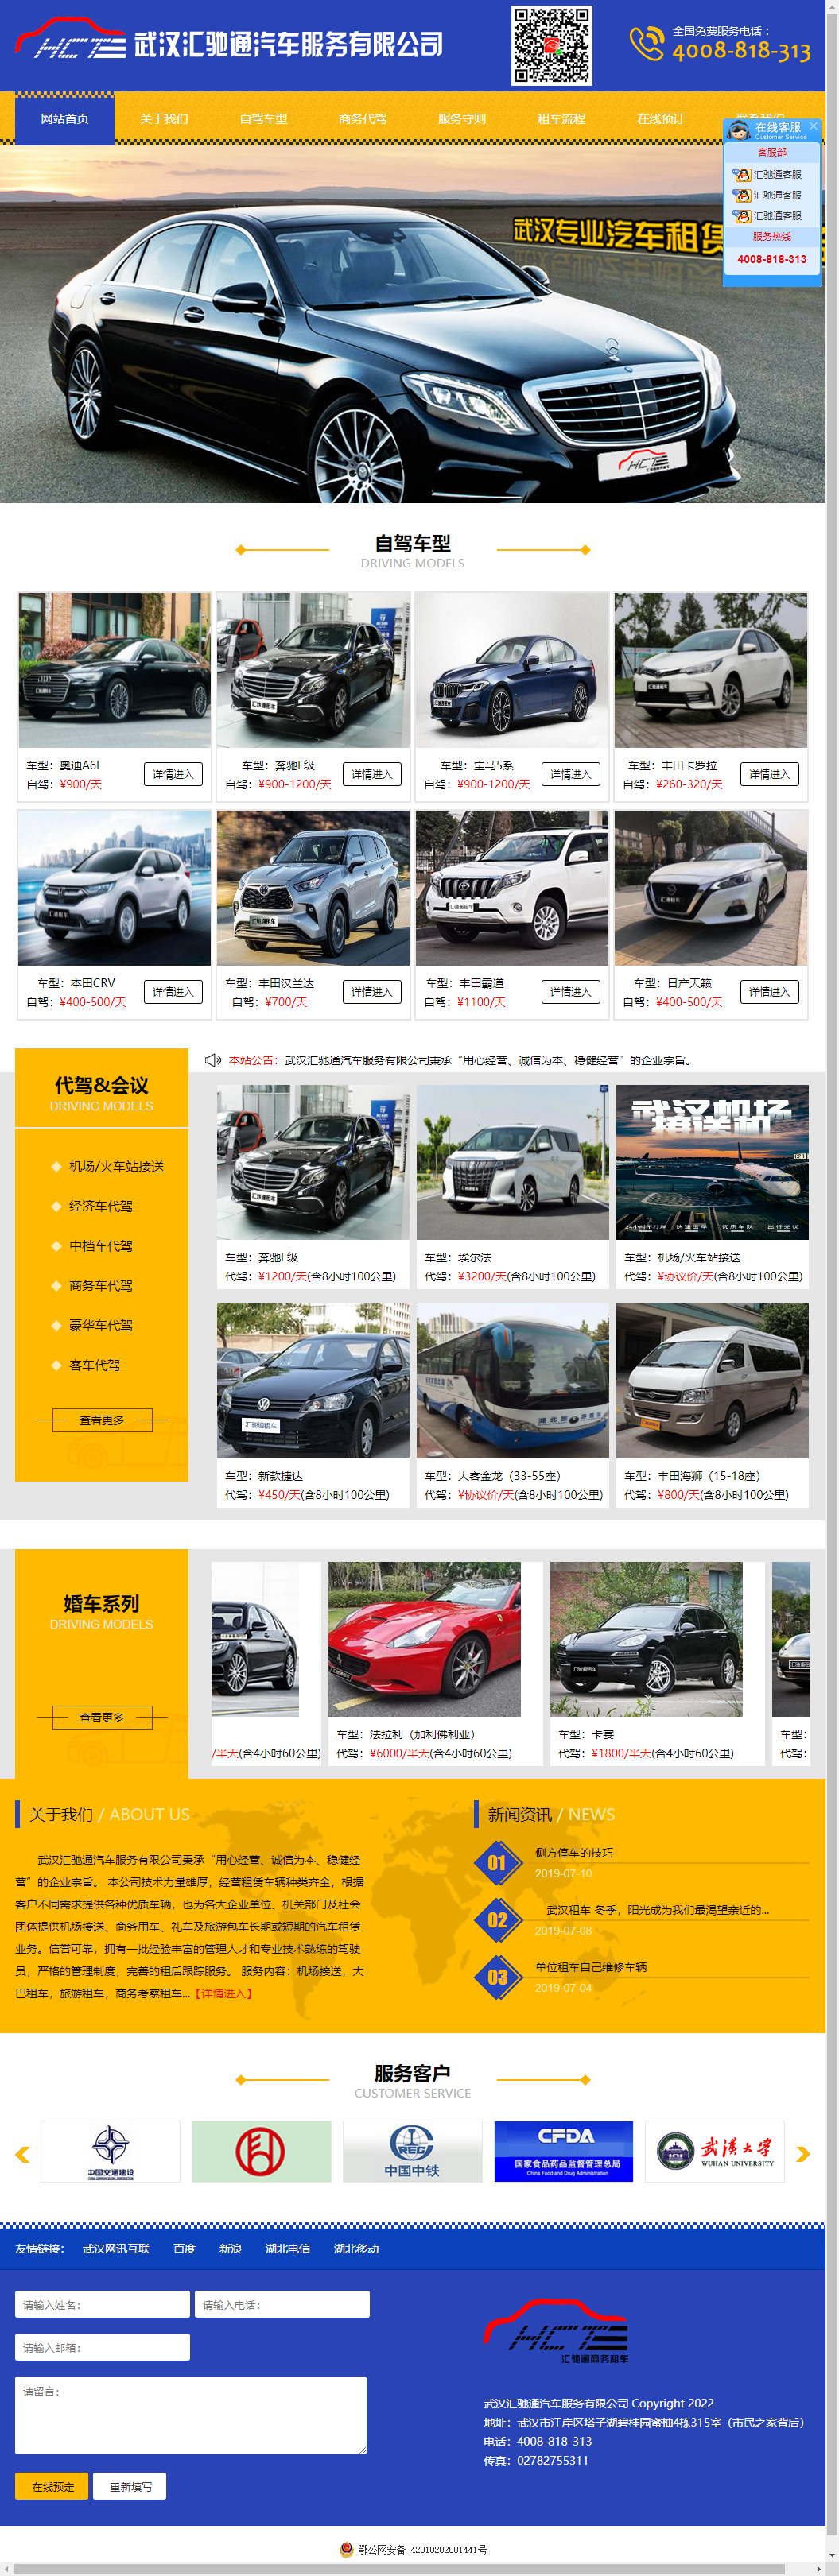 武汉汇驰通汽车服务有限公司网站案例